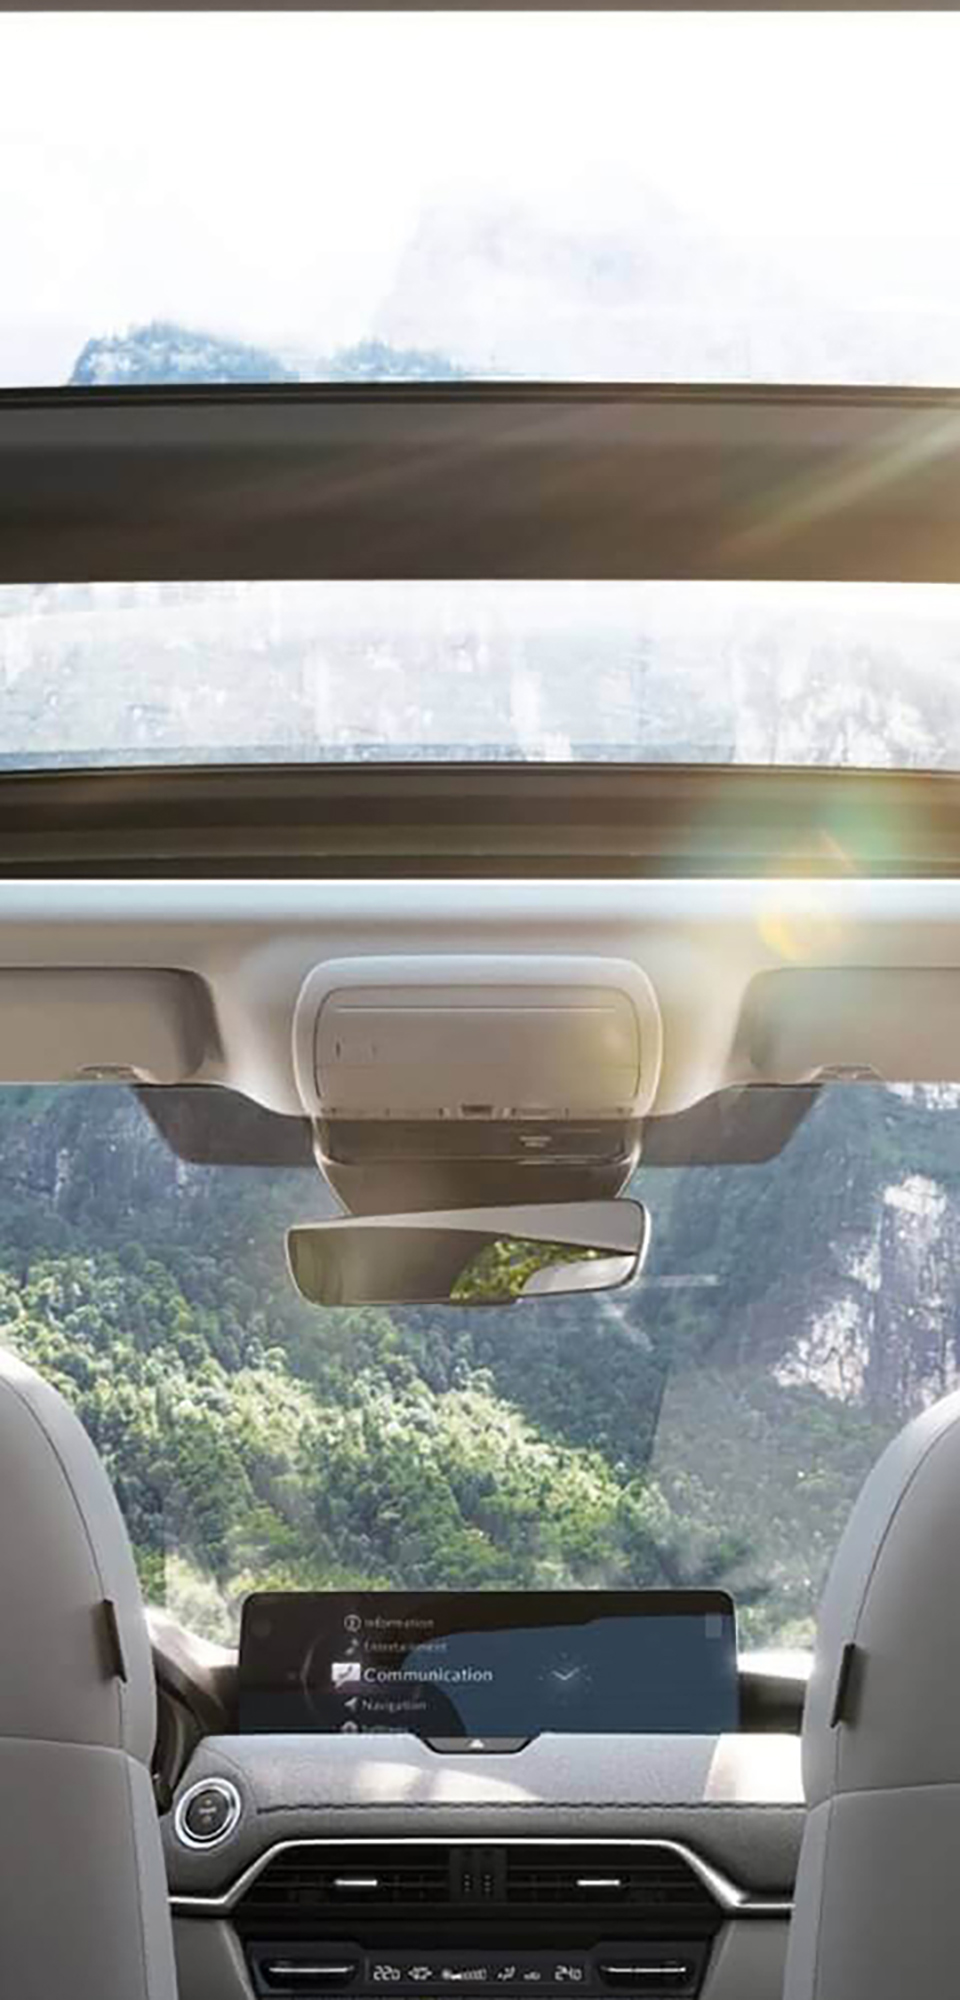 Prostorna notranjost novega priključnohibridnega SUV-ja Mazda CX-60 s panoramskim strešnim oknom.